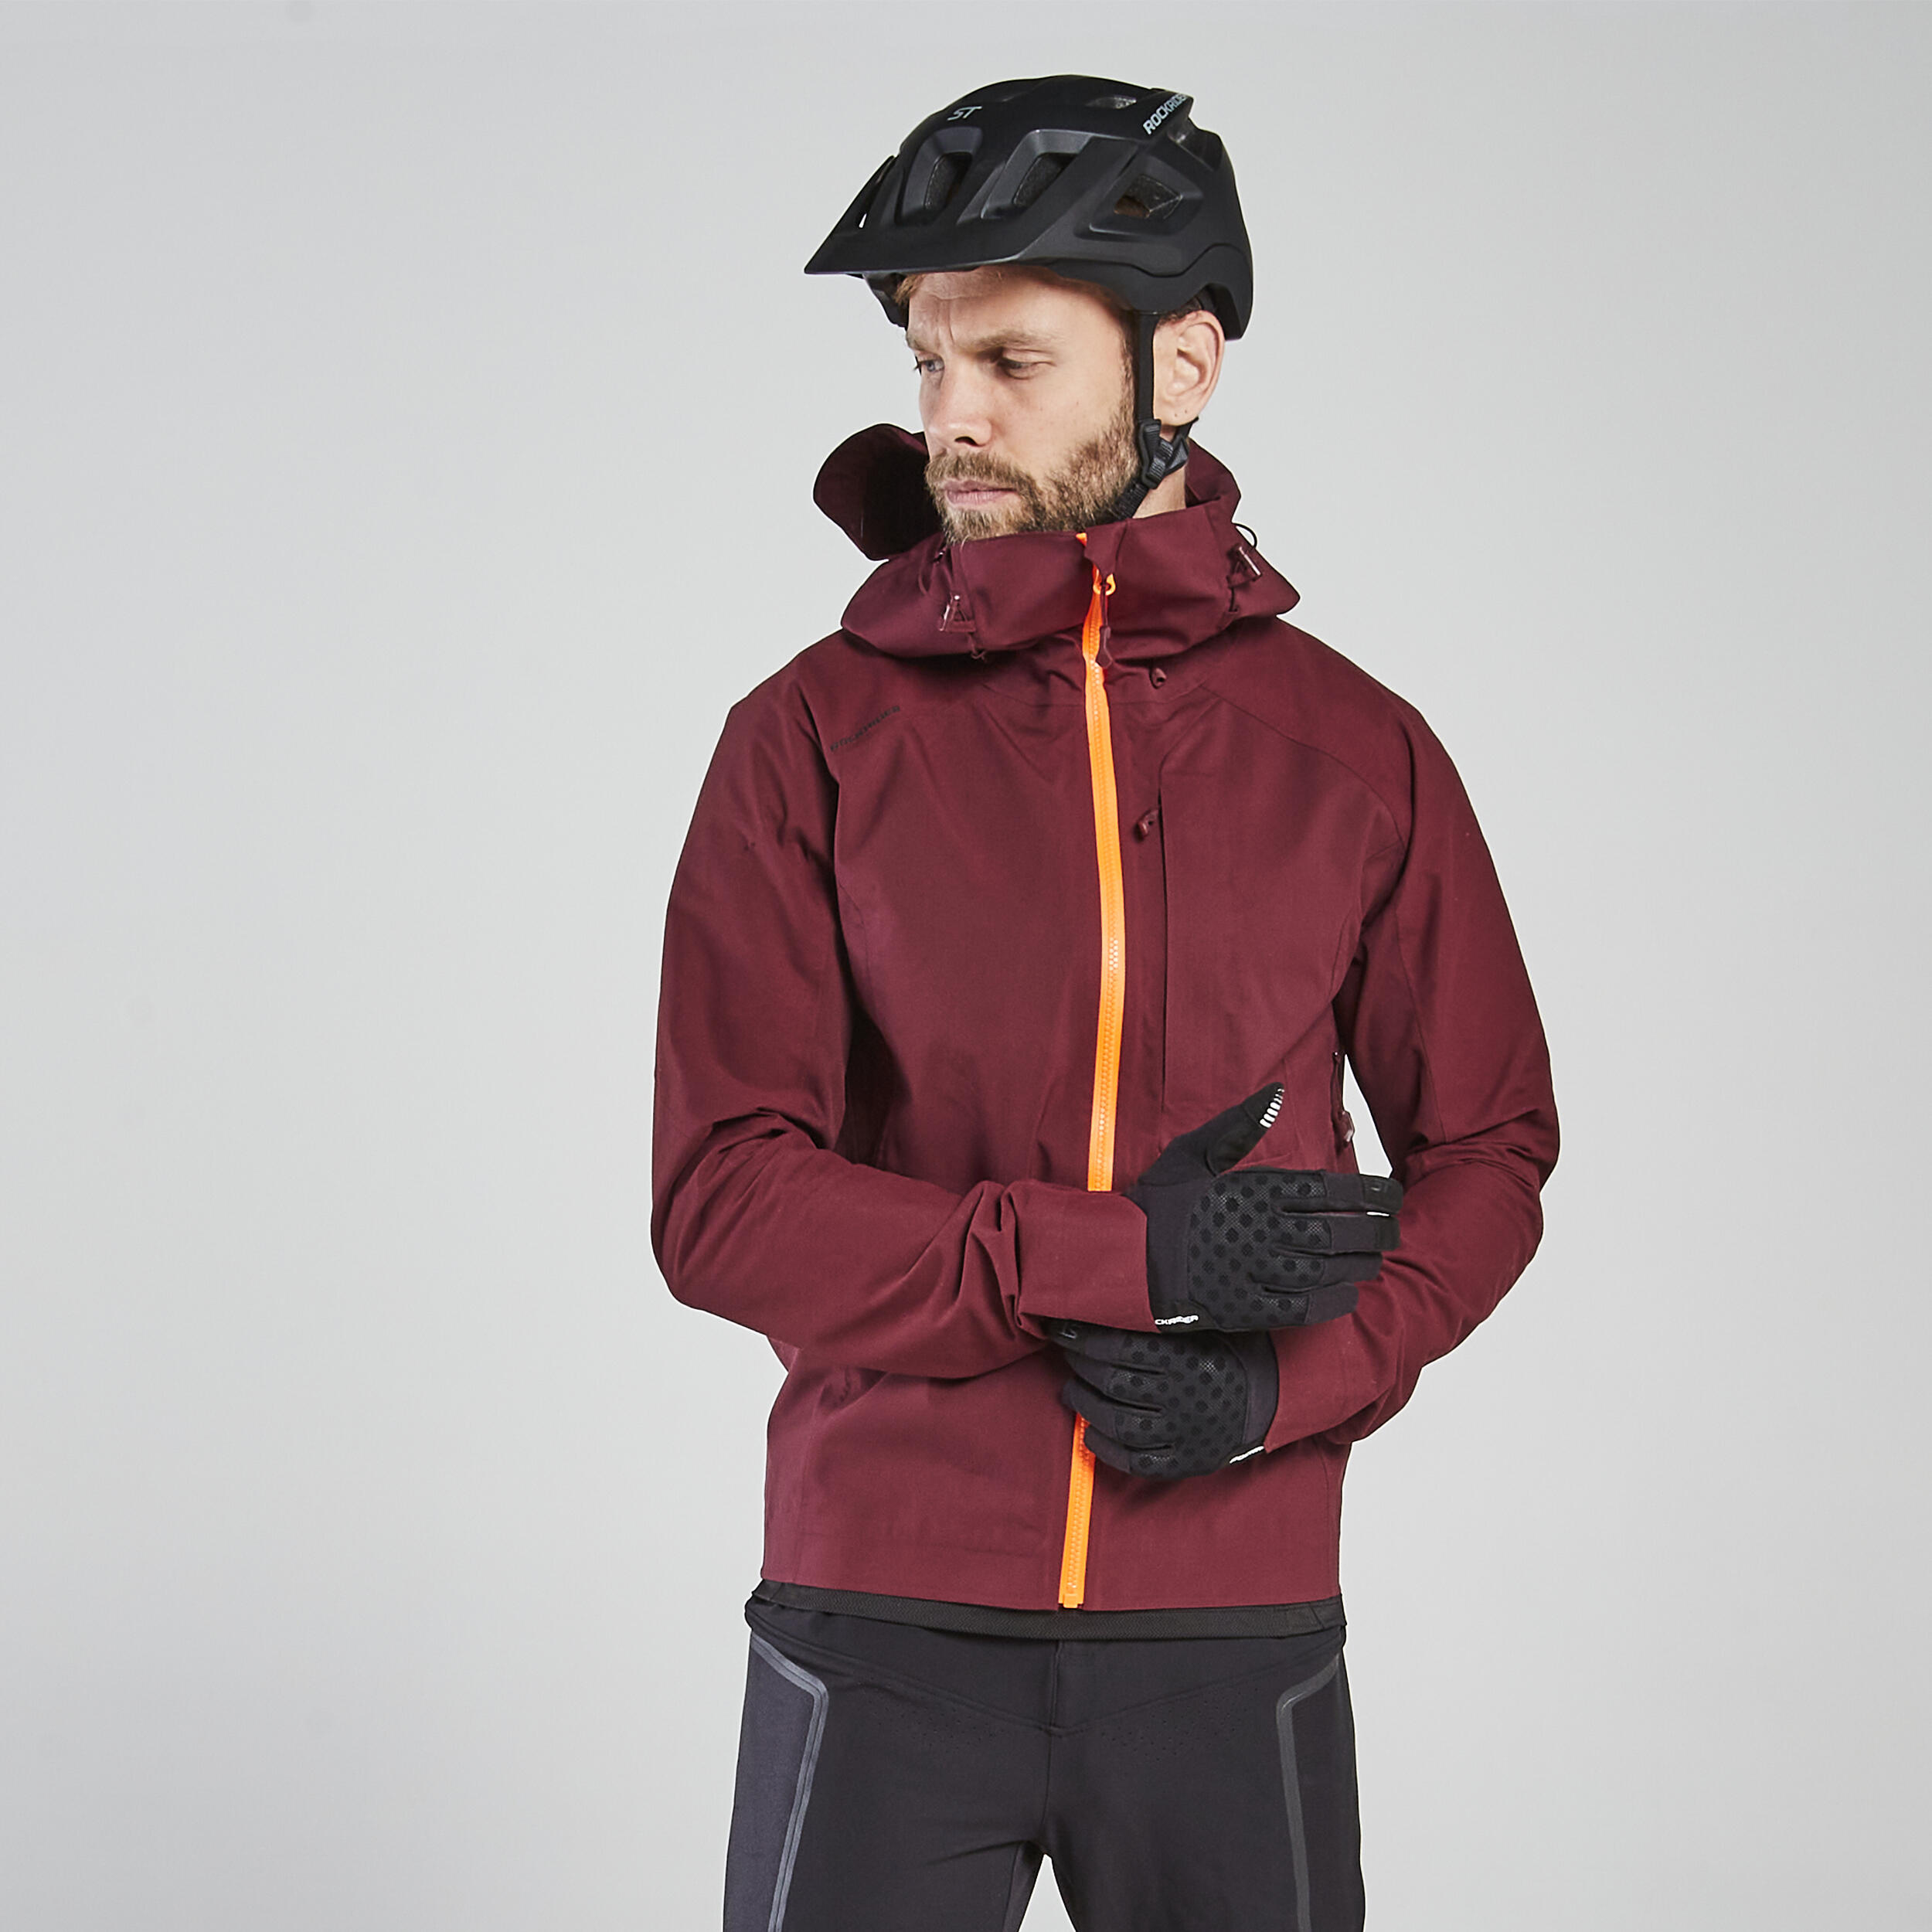 INBIKE Giacca Ciclismo Invernali da Uomo Giacche Softshell Antivento Impermeabile Caldo per Escursionismo MTB Bici Running Sport Outdoor e Vita Quotidiana 